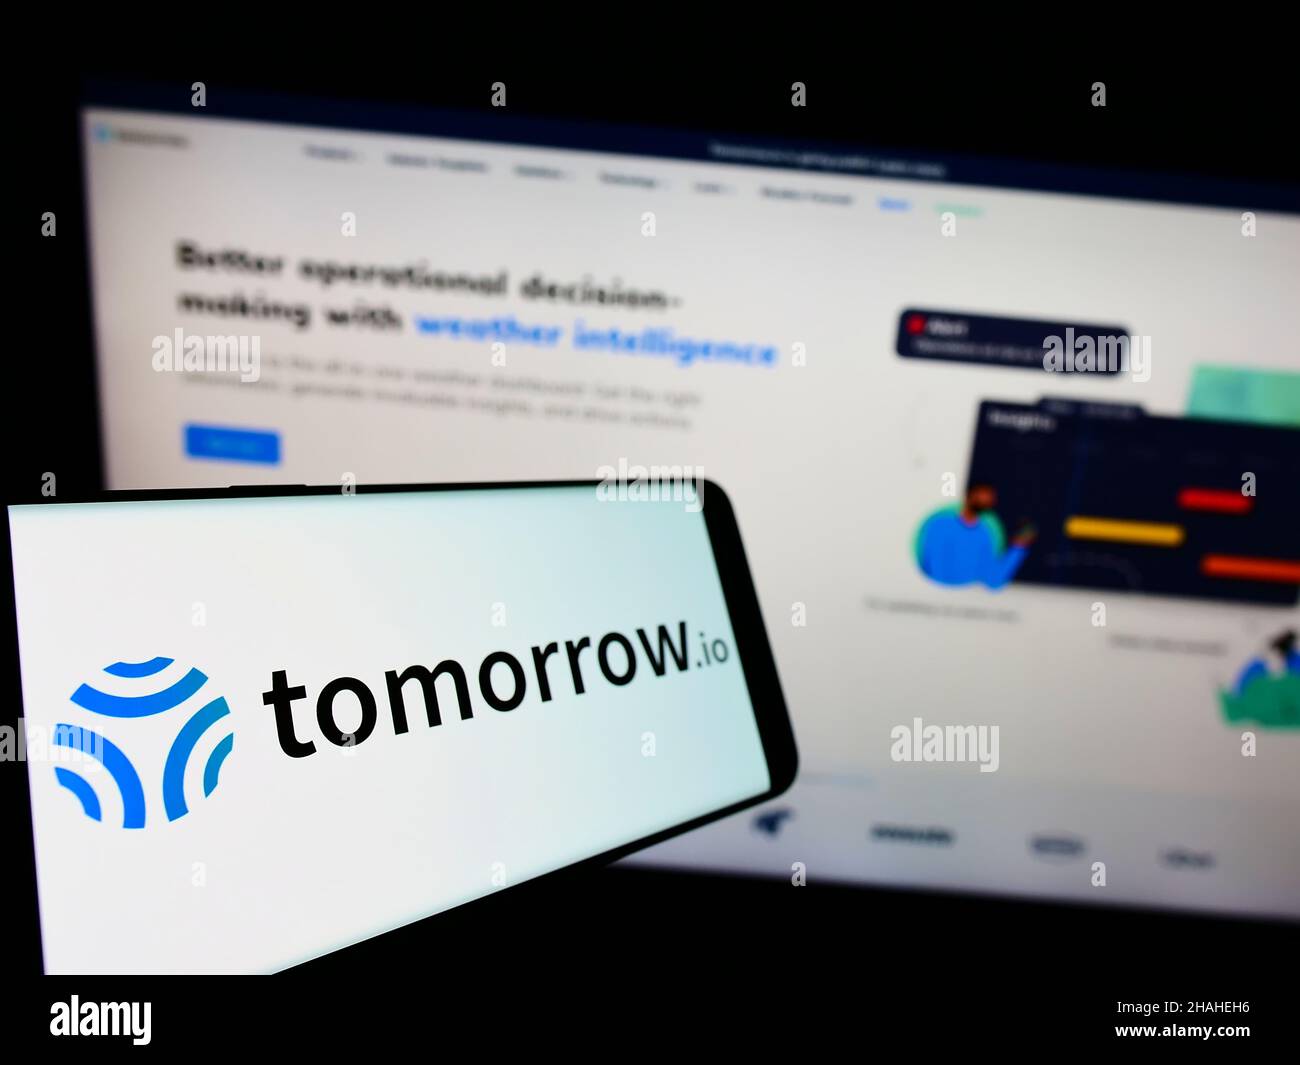 Téléphone mobile avec logo de la société The Tomorrow Companies Inc. (Tomorrow.io) à l'écran en face du site Web d'affaires.Mise au point à gauche de l'écran du téléphone. Banque D'Images